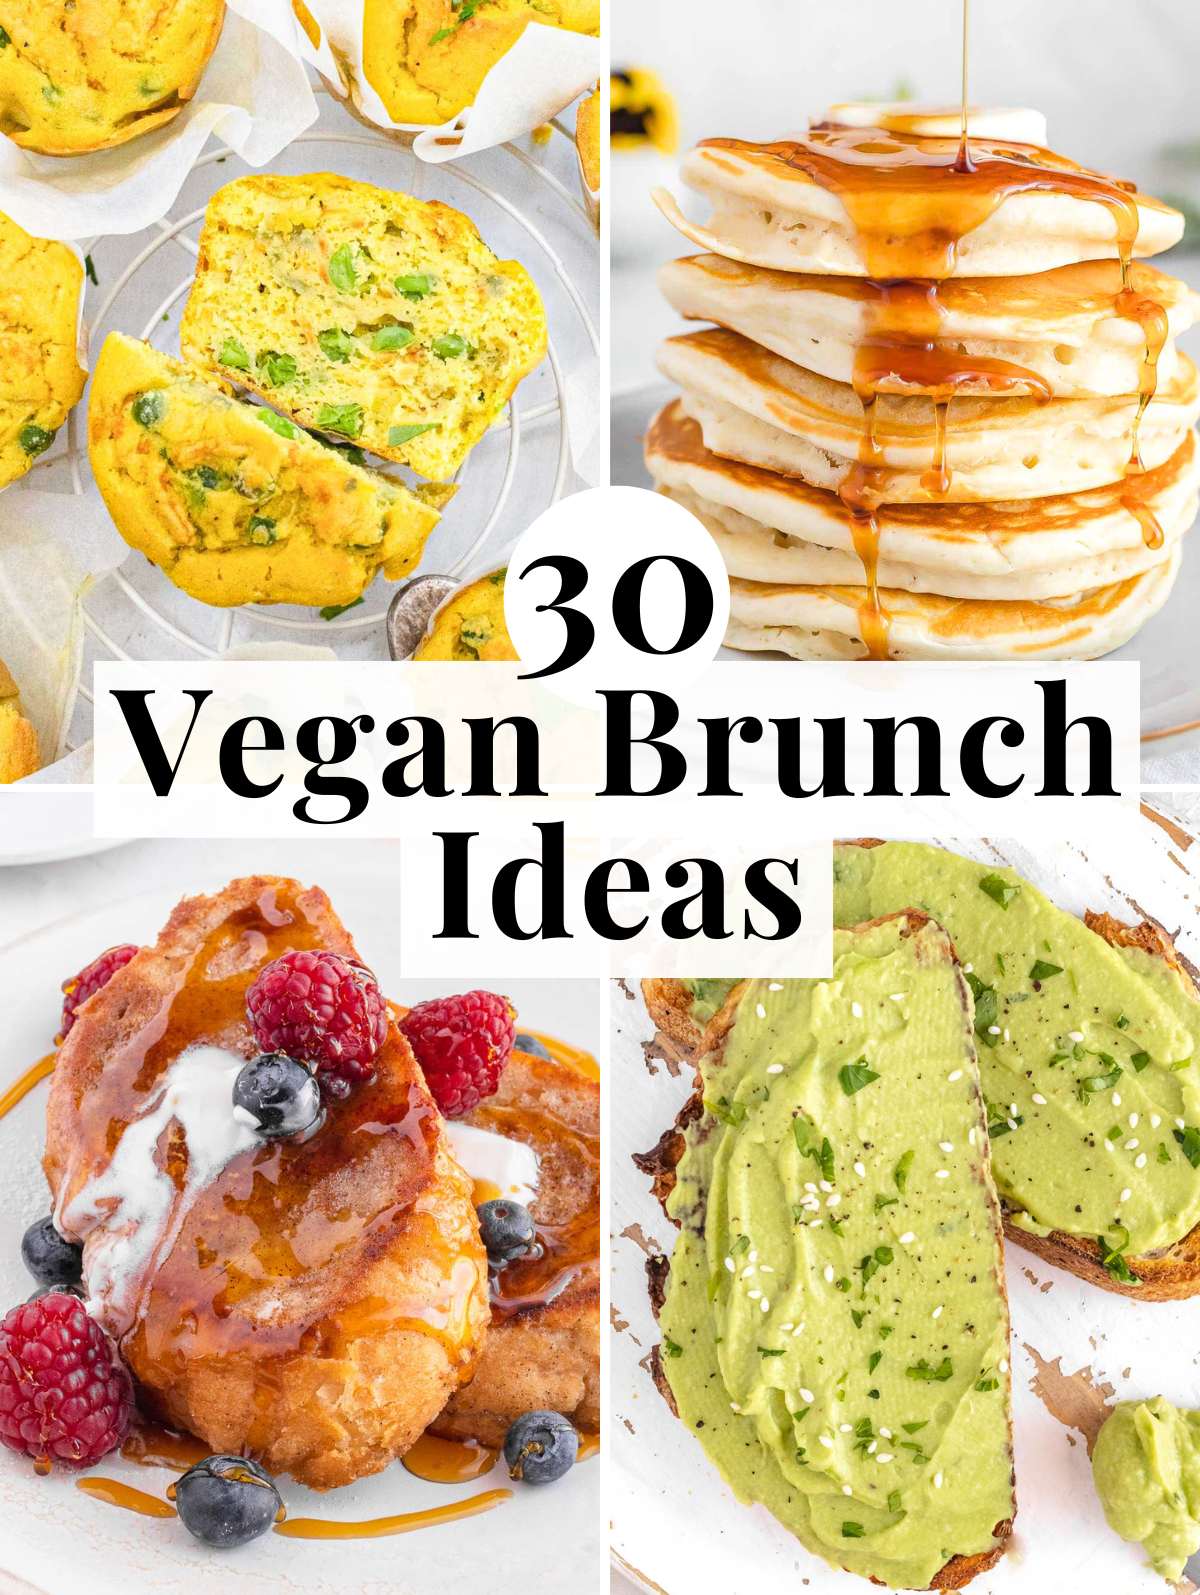 Vegan brunch recipes